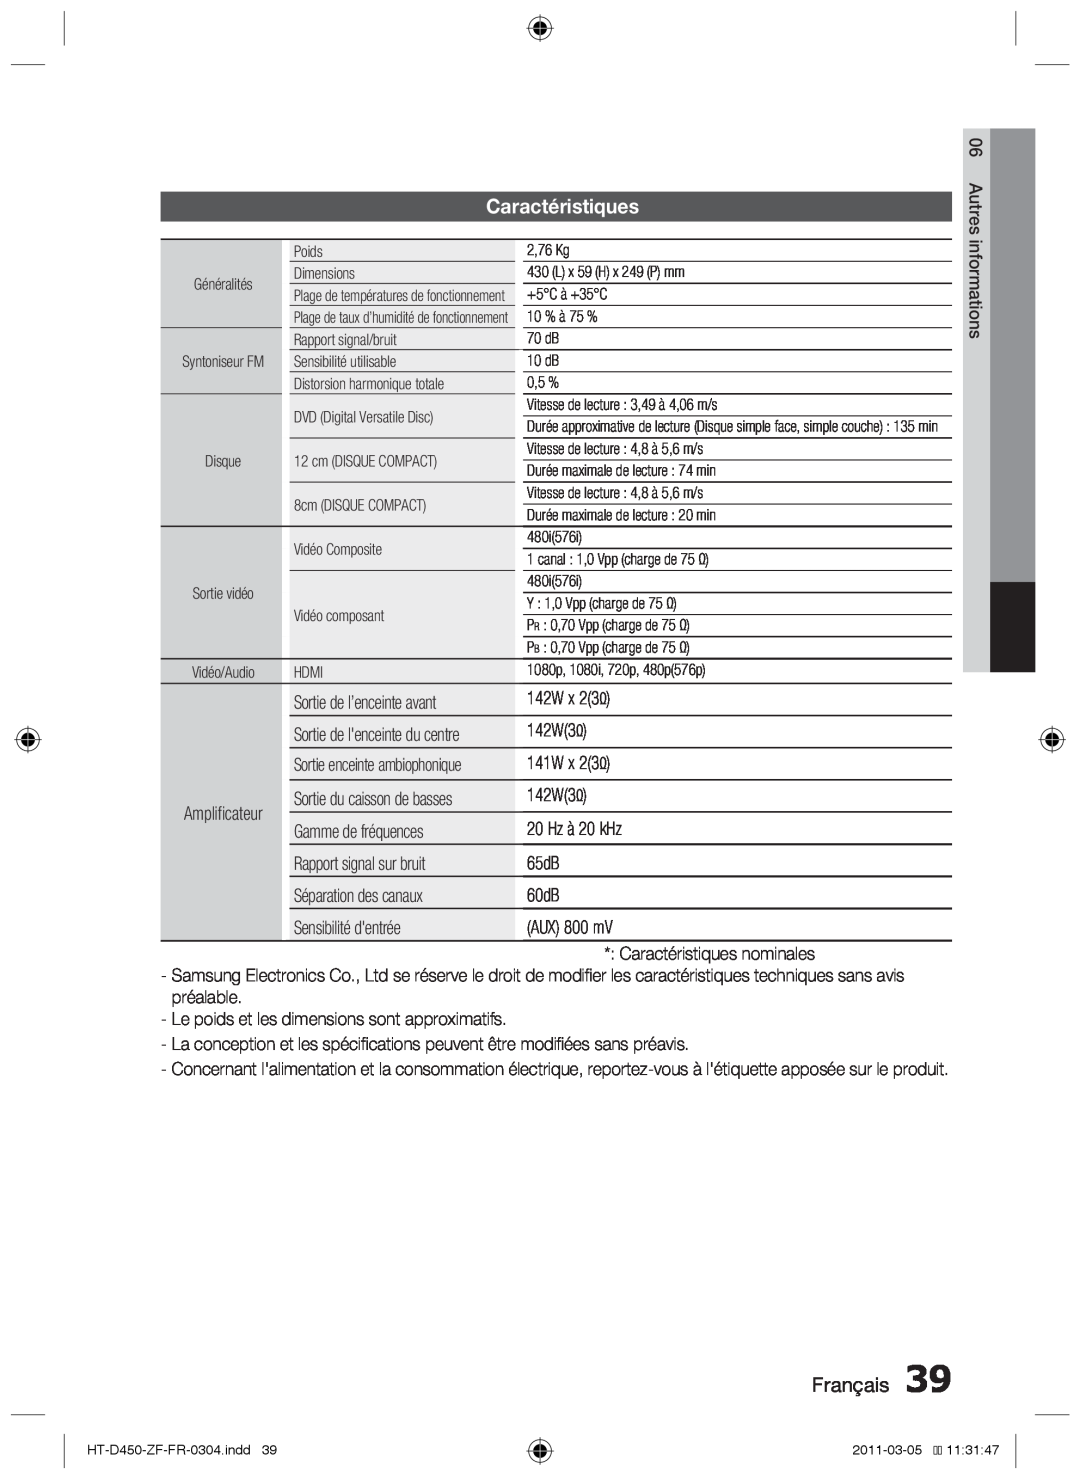 Samsung HT-D450, HT-D455, HT-D453 user manual Caractéristiques, Français 